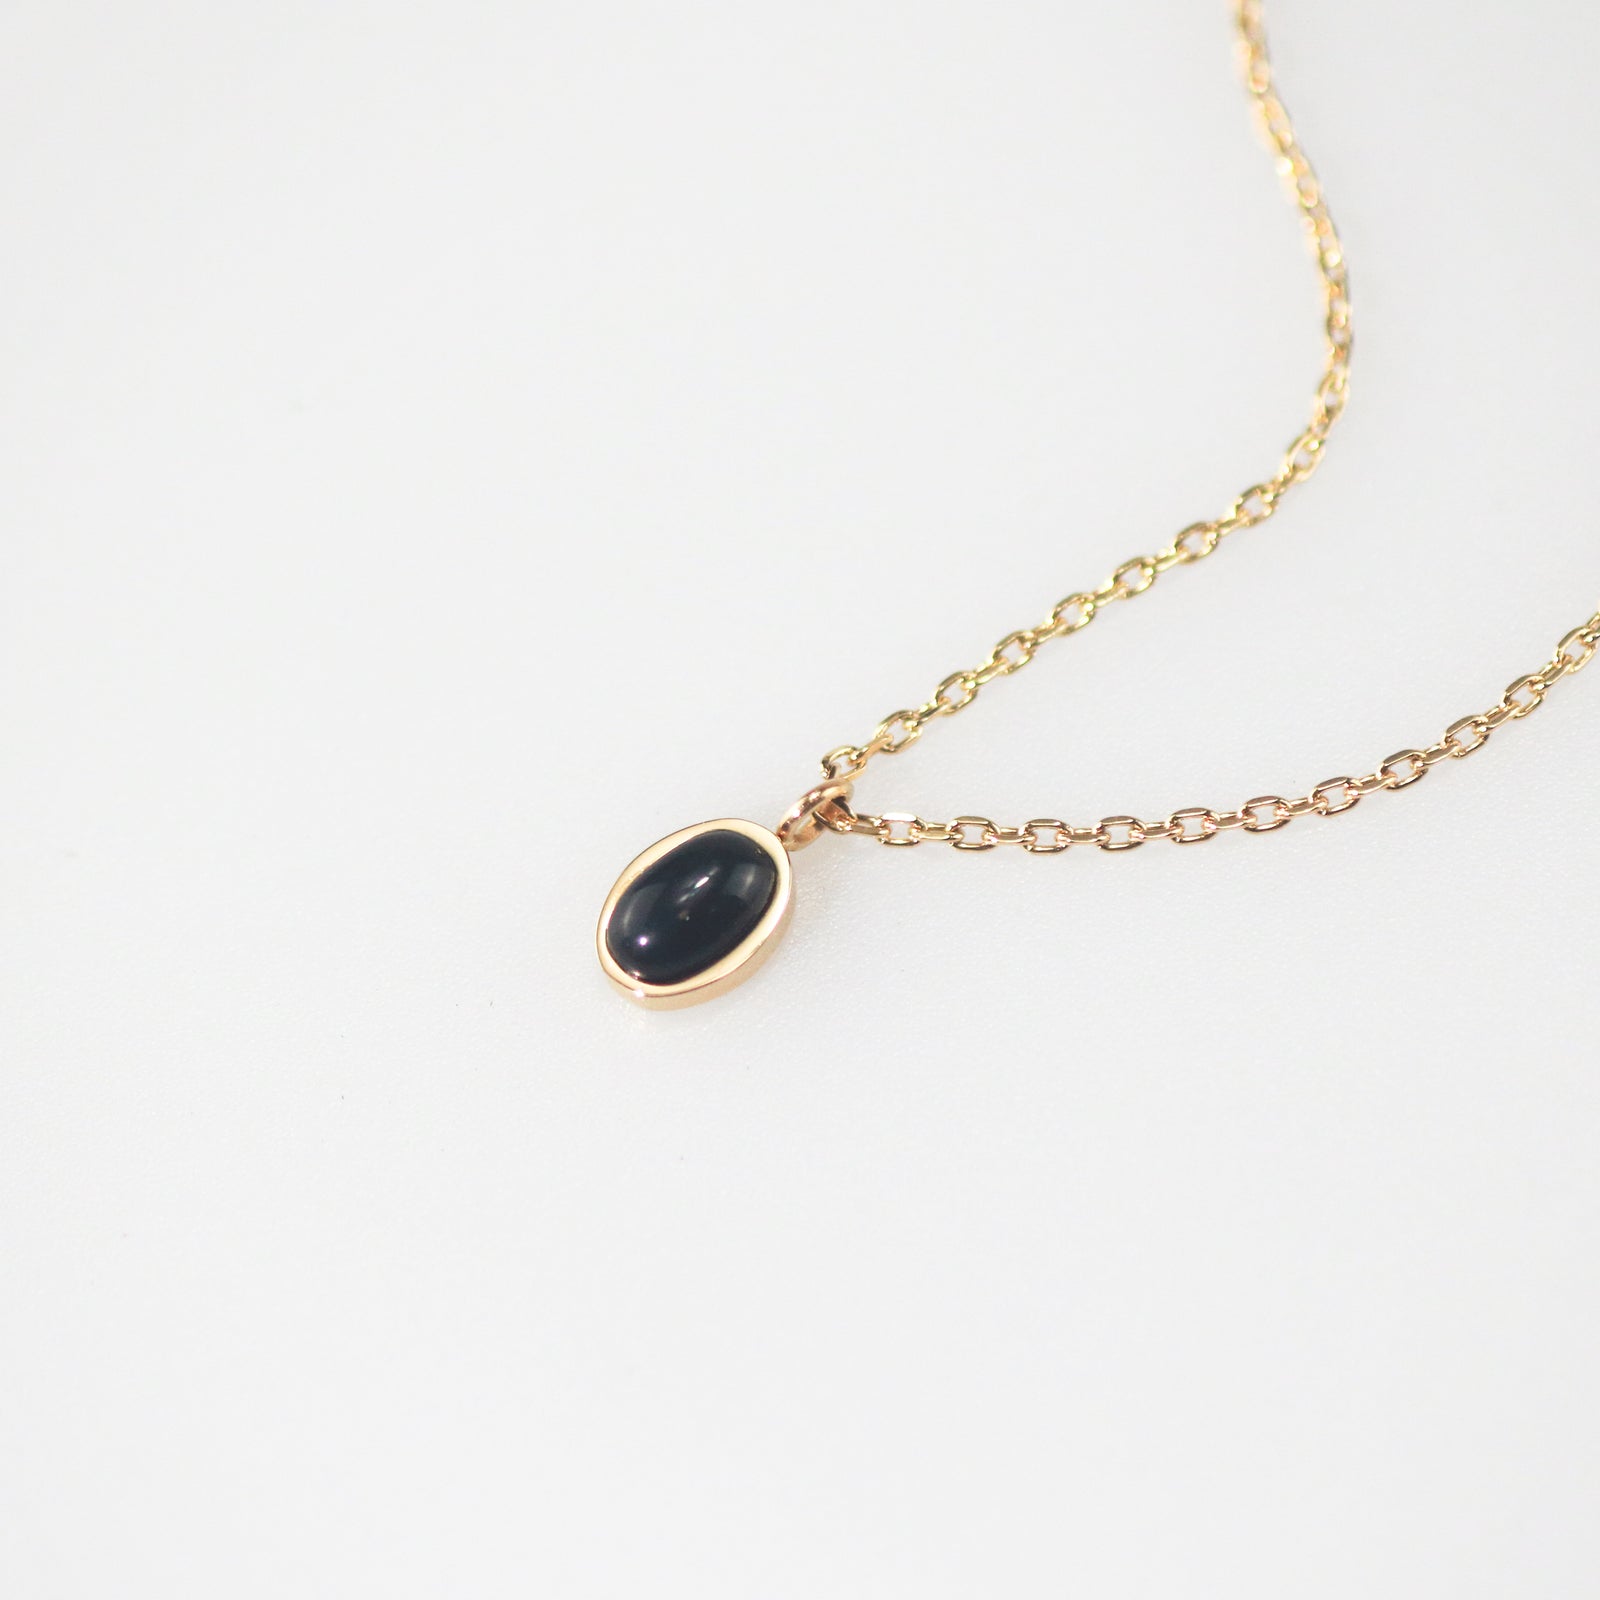 Meideya Jewelry Tiny Oval Black Onyx Necklace